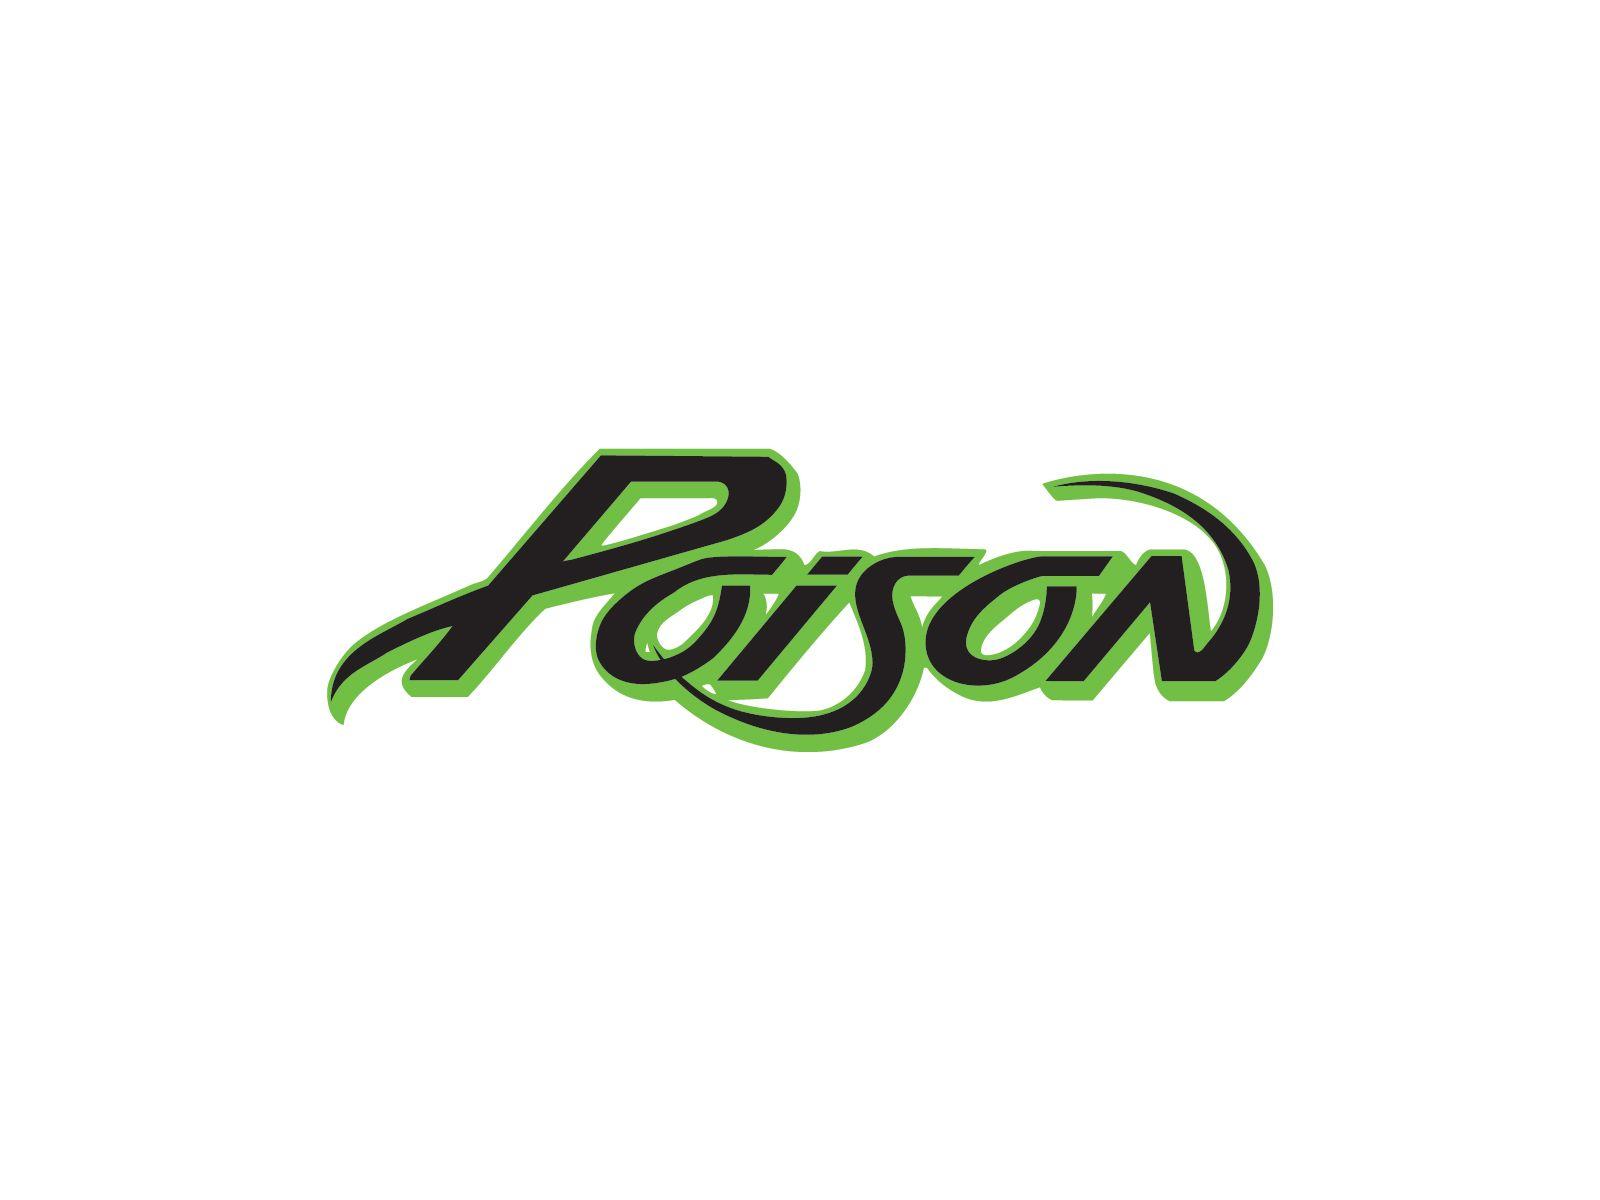 Glam Rock Band Logo - Poison band logo | Band logos | Band logos, Metal bands, Rock band logos